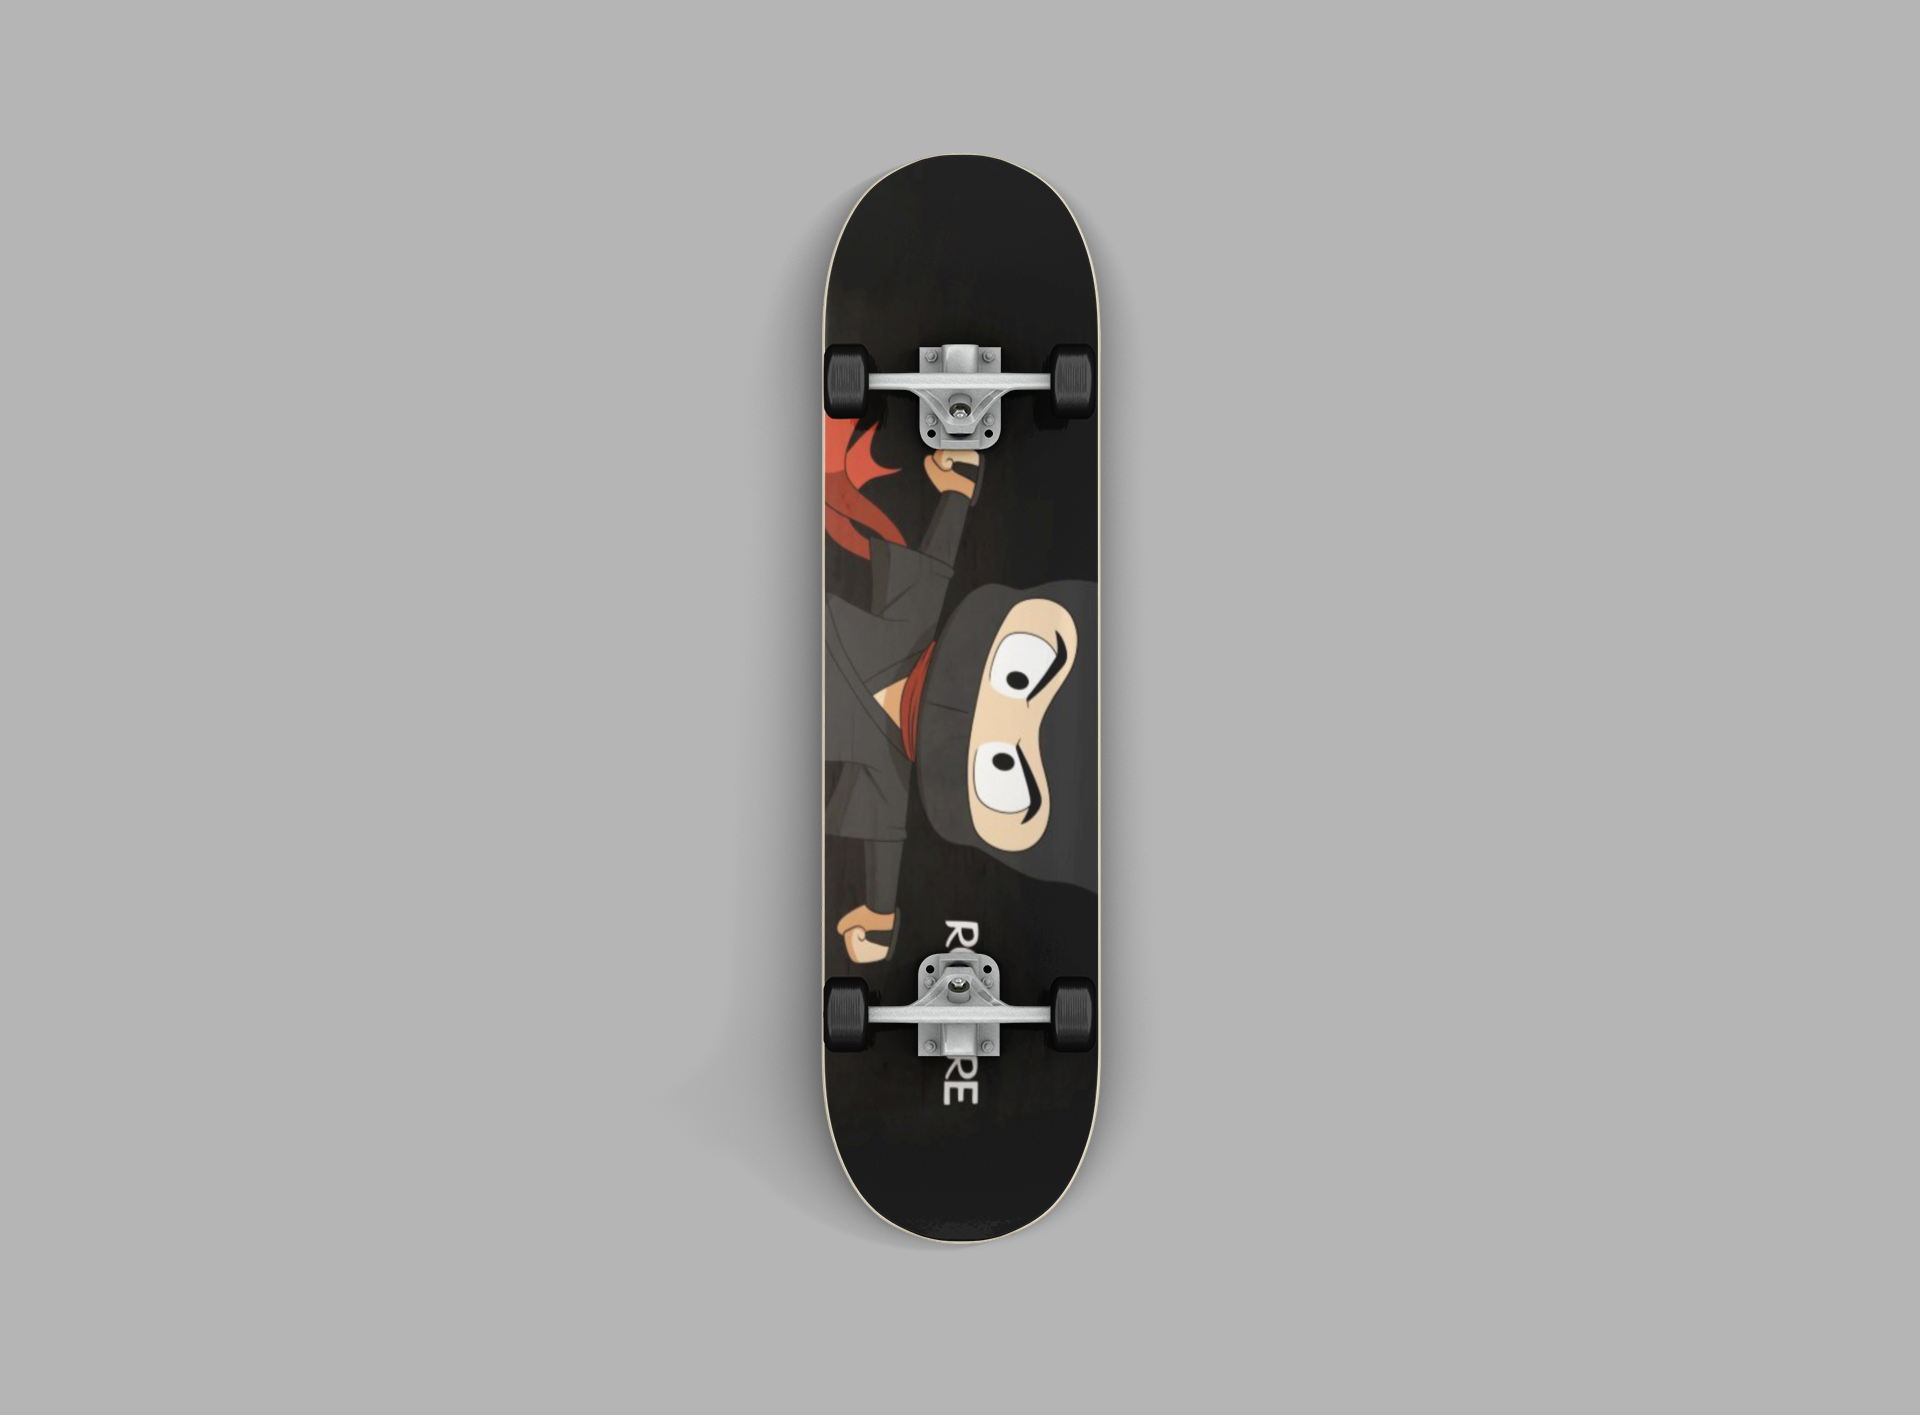 render-mockup-of-a-skateboard-against-a-flat-surface-383-el (2).png